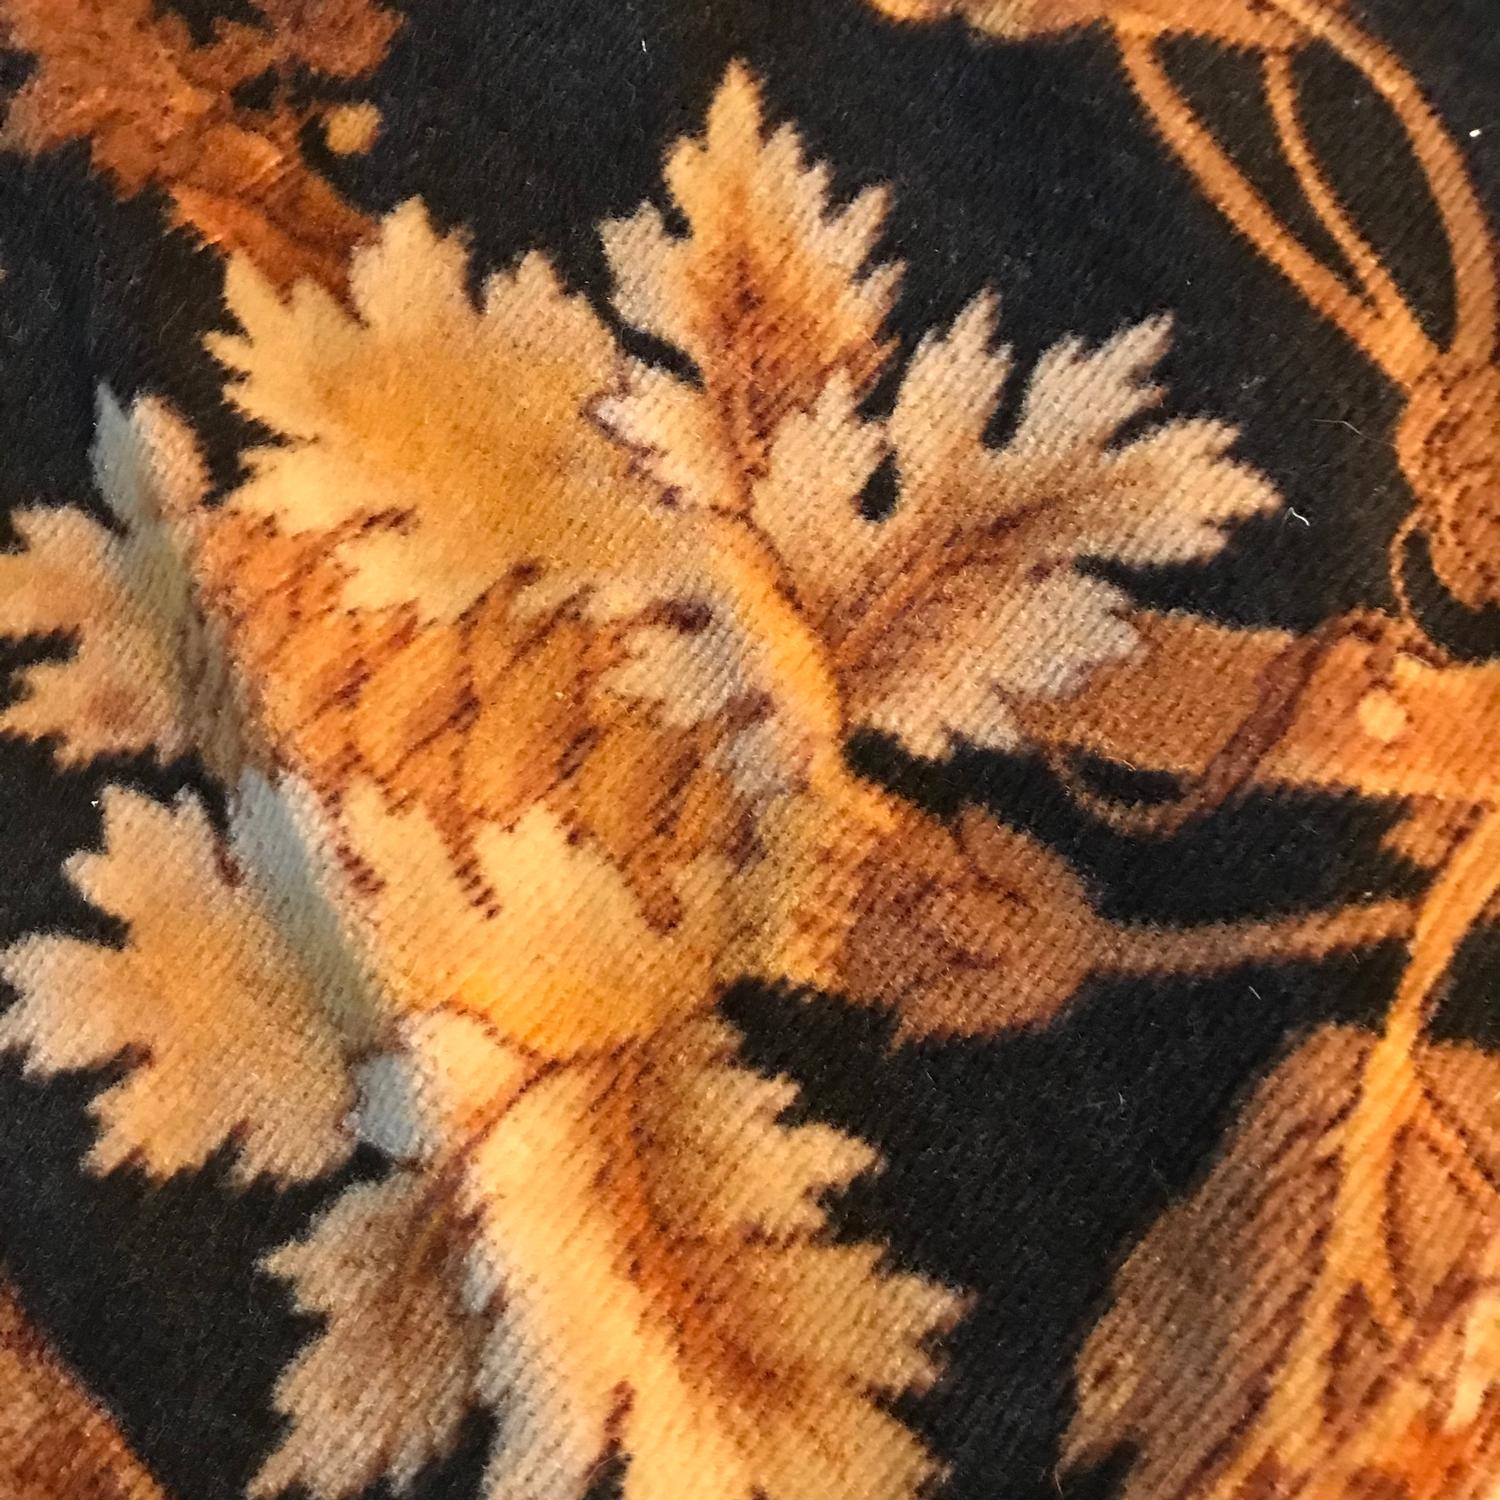 An antique ornate floral design rug. Measures 260x166cm - Image 3 of 4